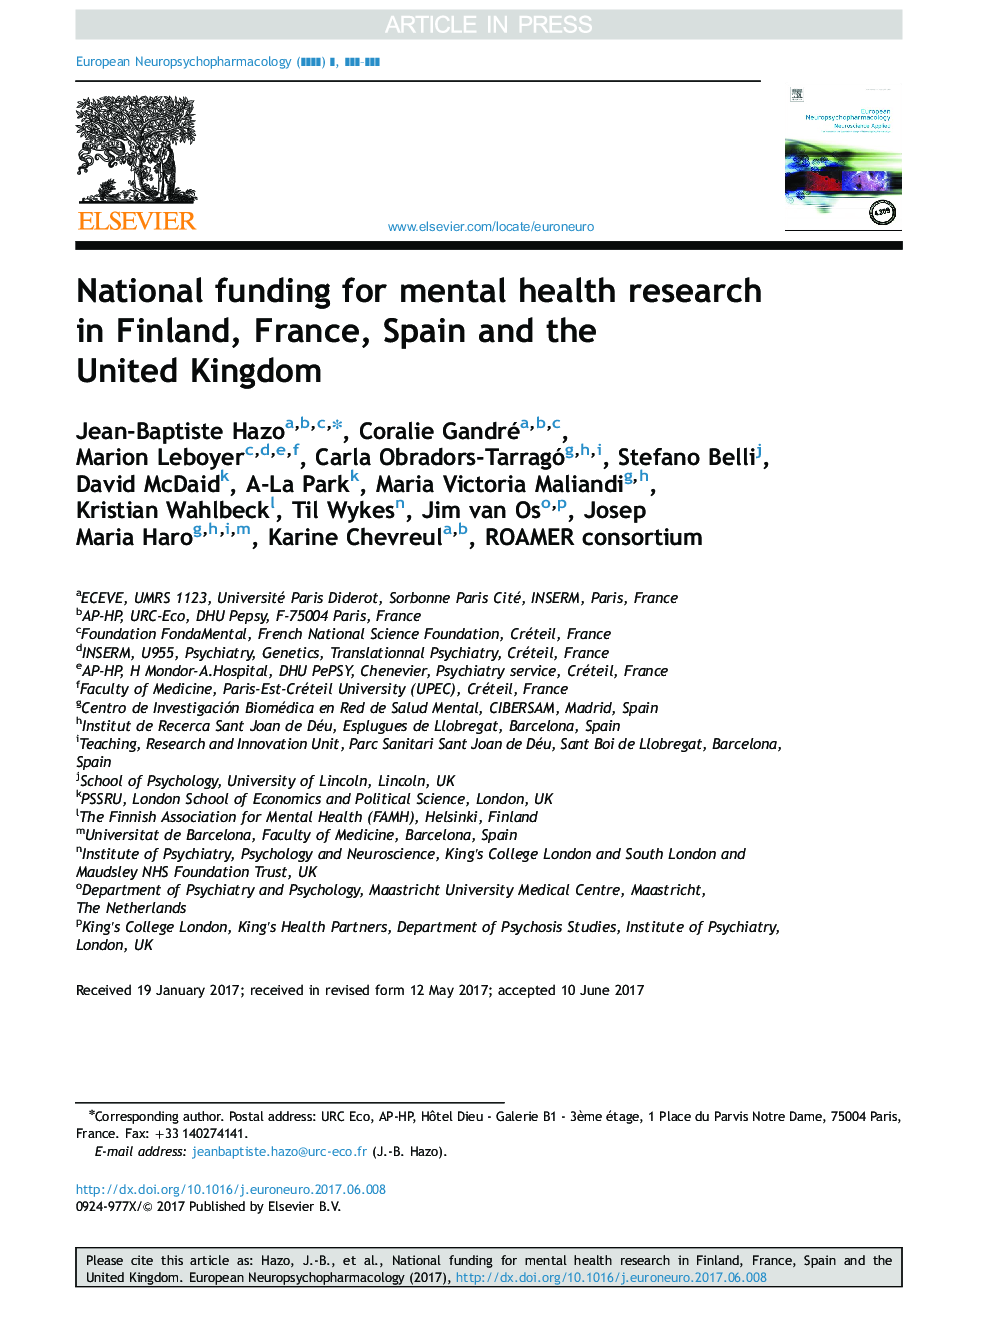 کمک مالی ملی برای تحقیقات بهداشت روانی در فنلاند، فرانسه، اسپانیا و انگلستان 